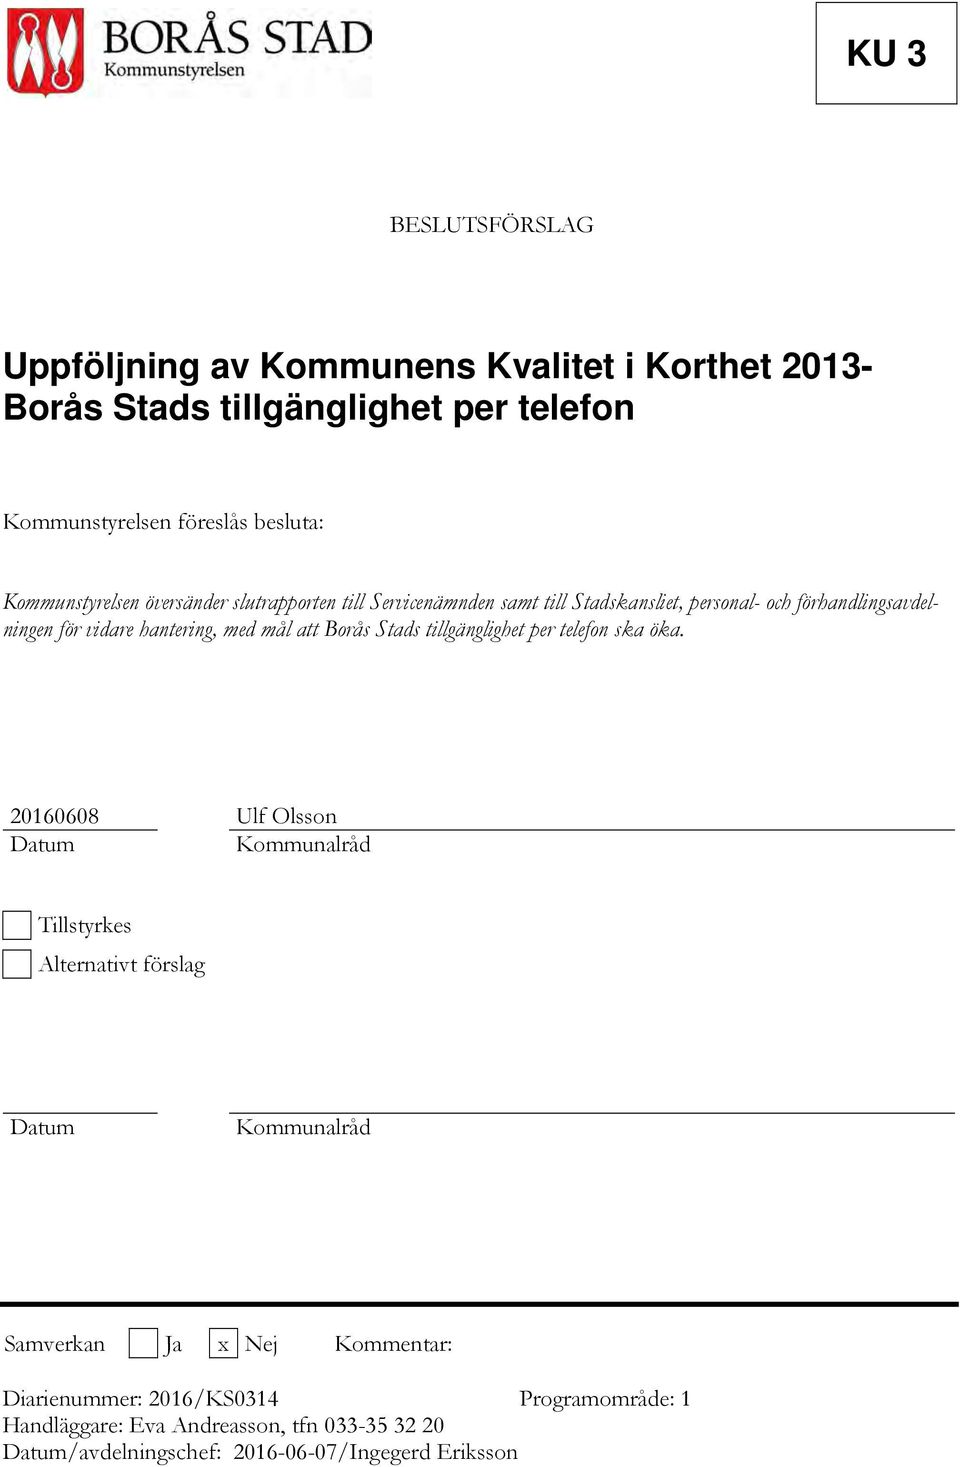 mål att Borås Stads tillgänglighet per telefon ska öka.